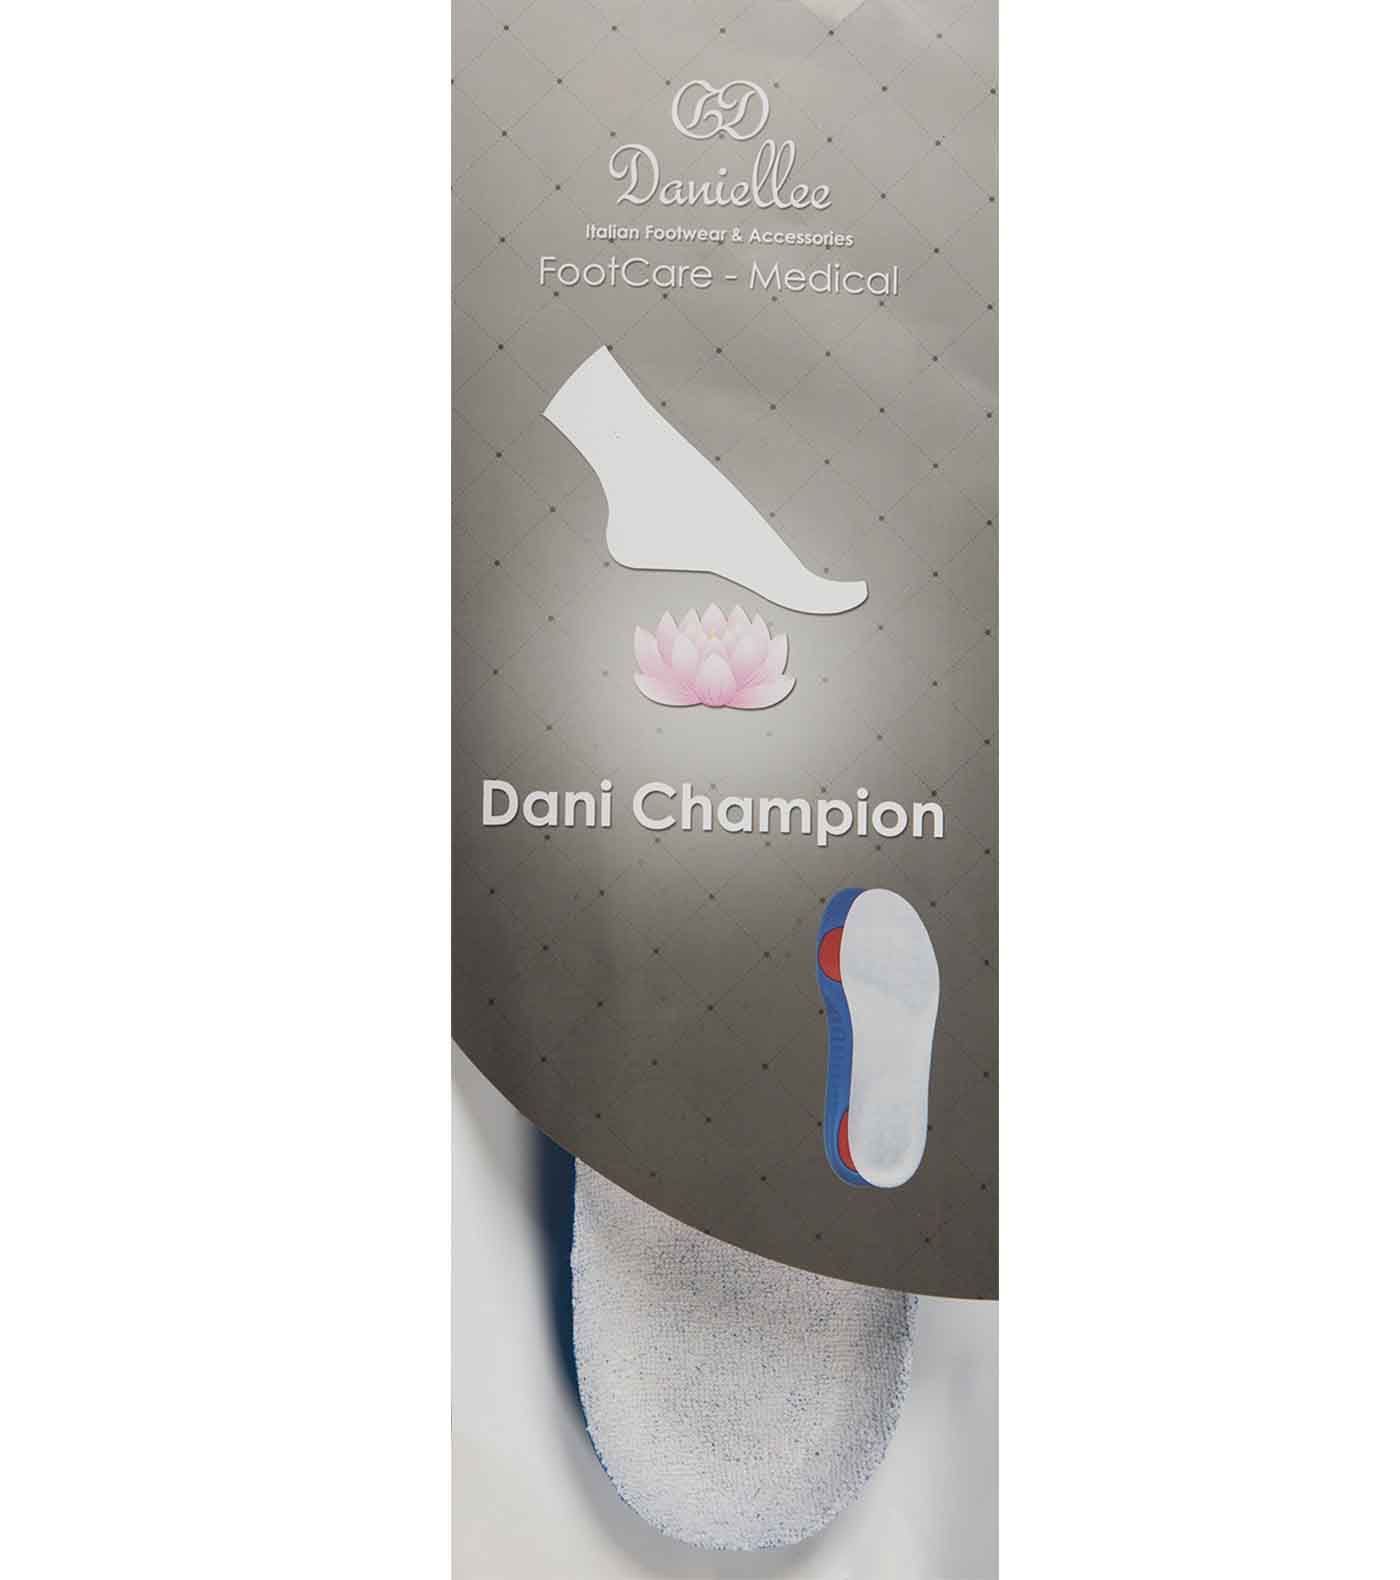 Dani Champion